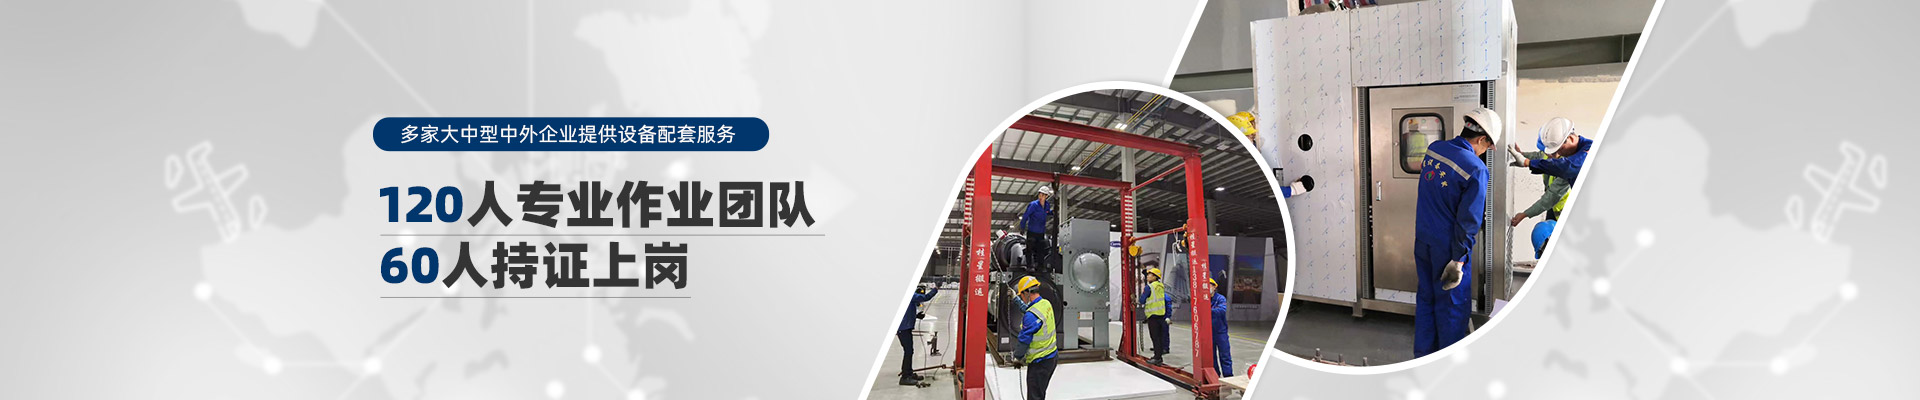 桂星搬运-规模化专业性施工企业及工业设备服务提供商